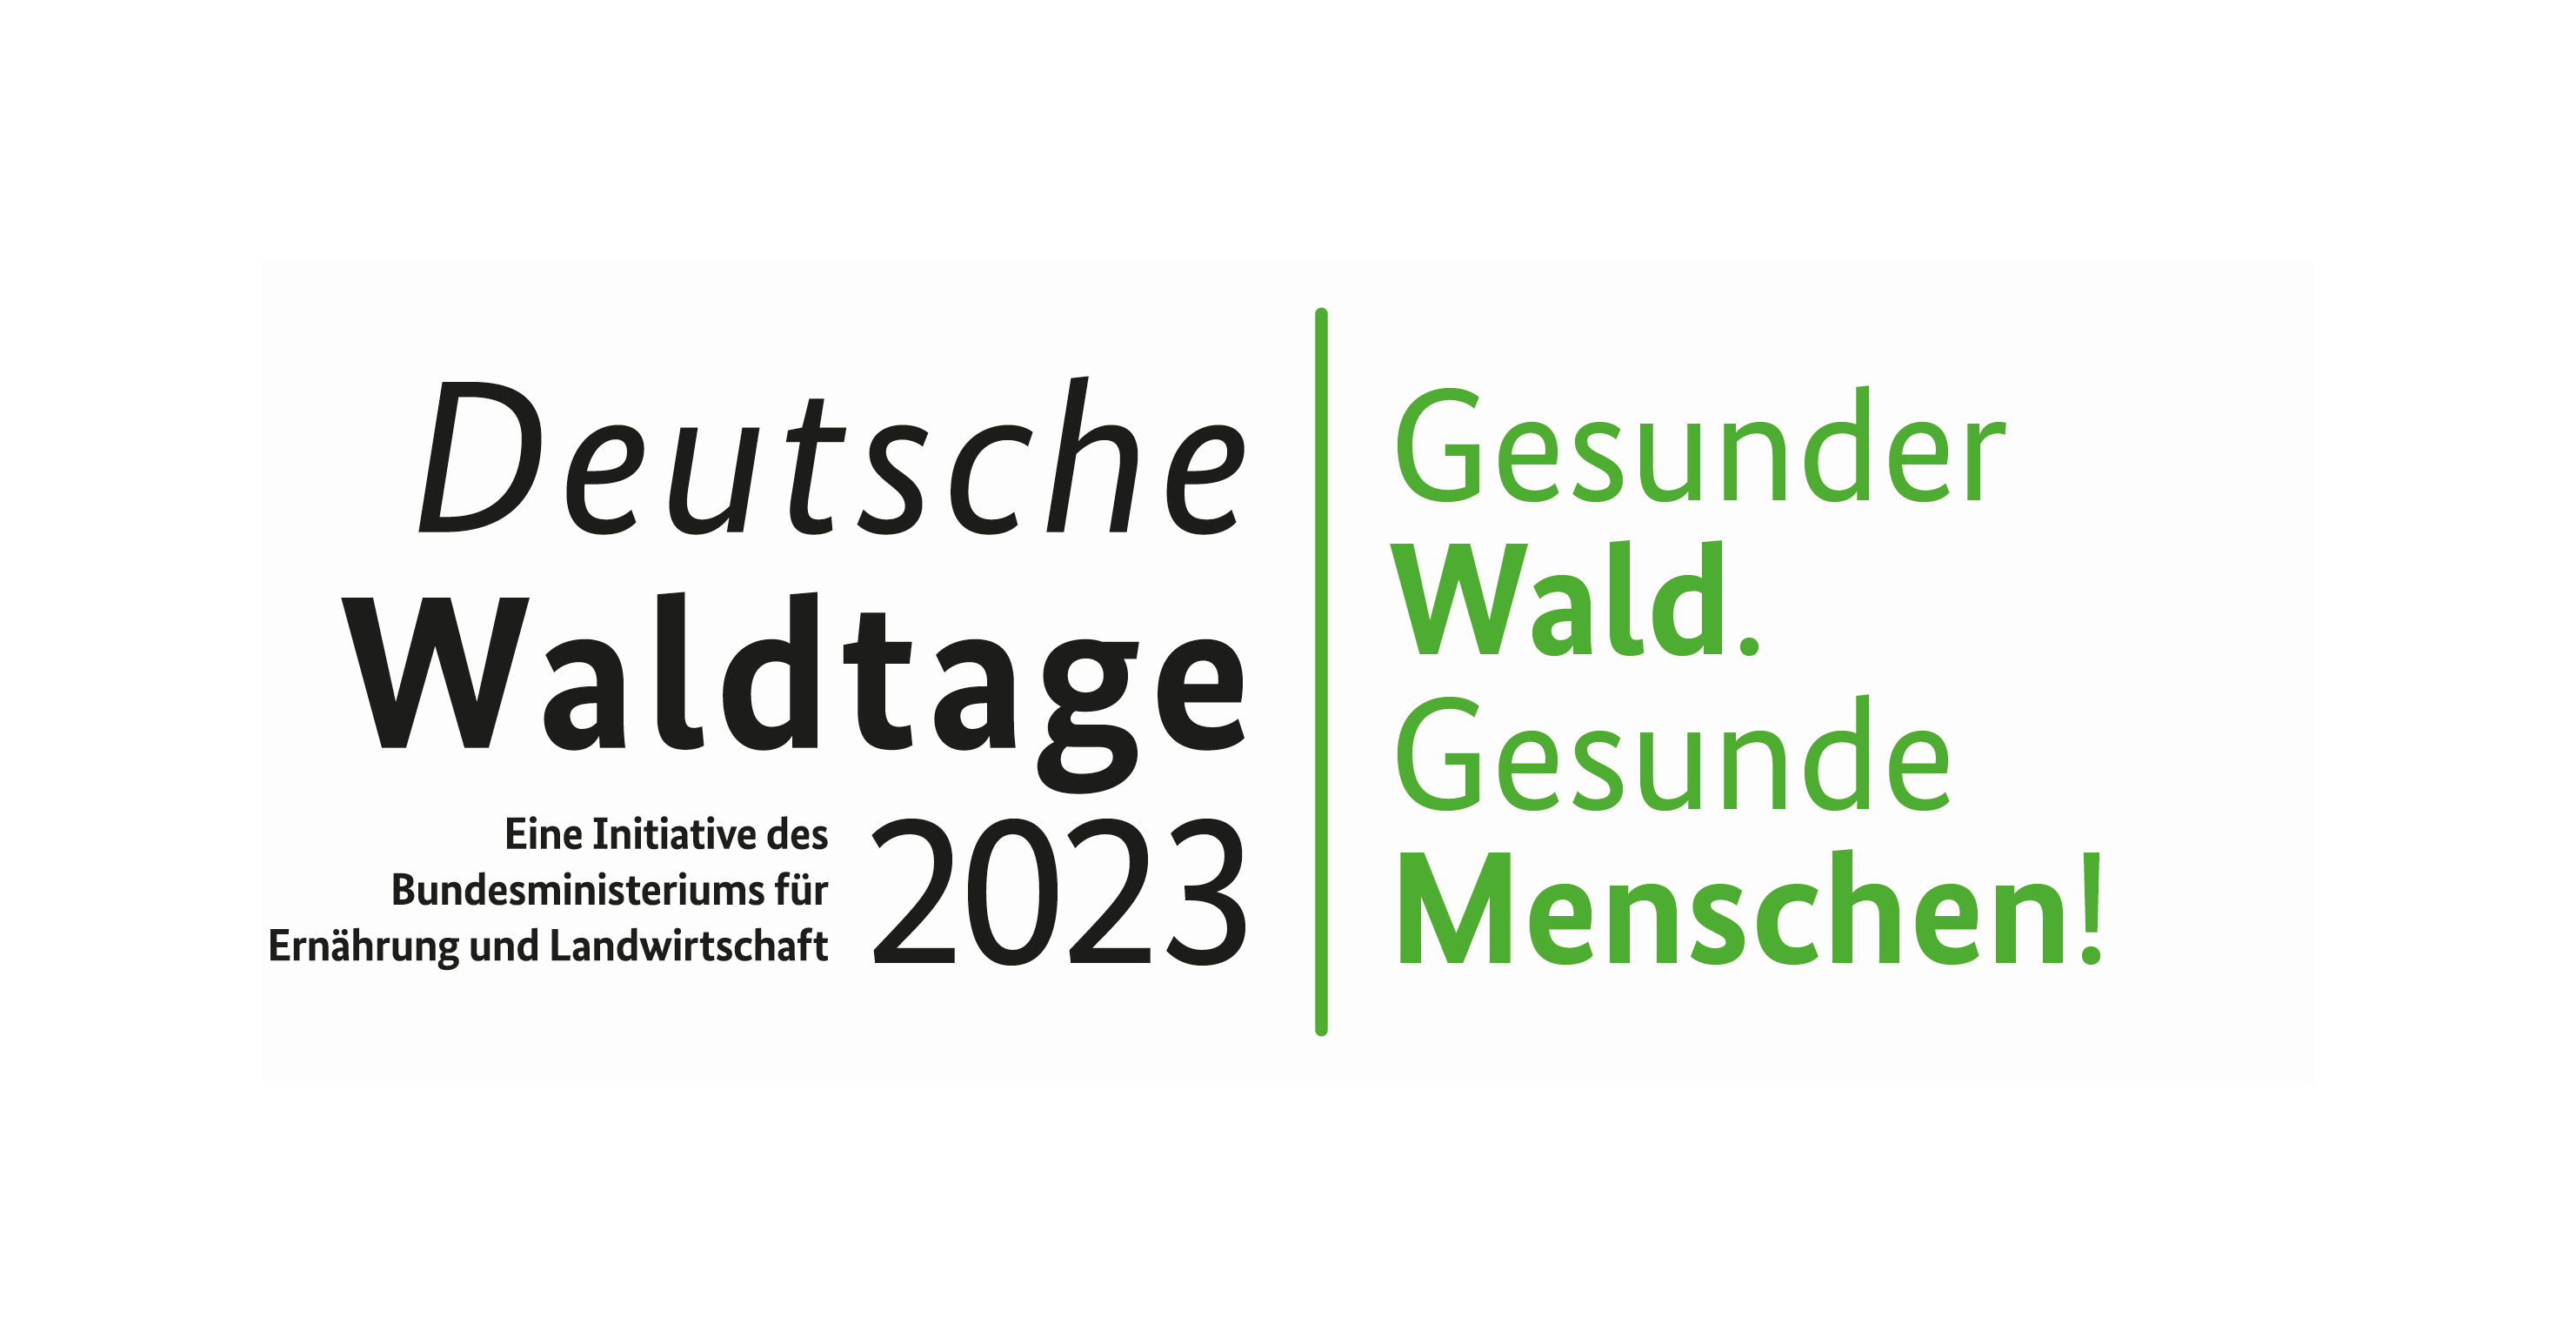 Logo der Deutschen Waldtage mit dem Schriftzug Gesunder Wald.Gesunde Menschen!